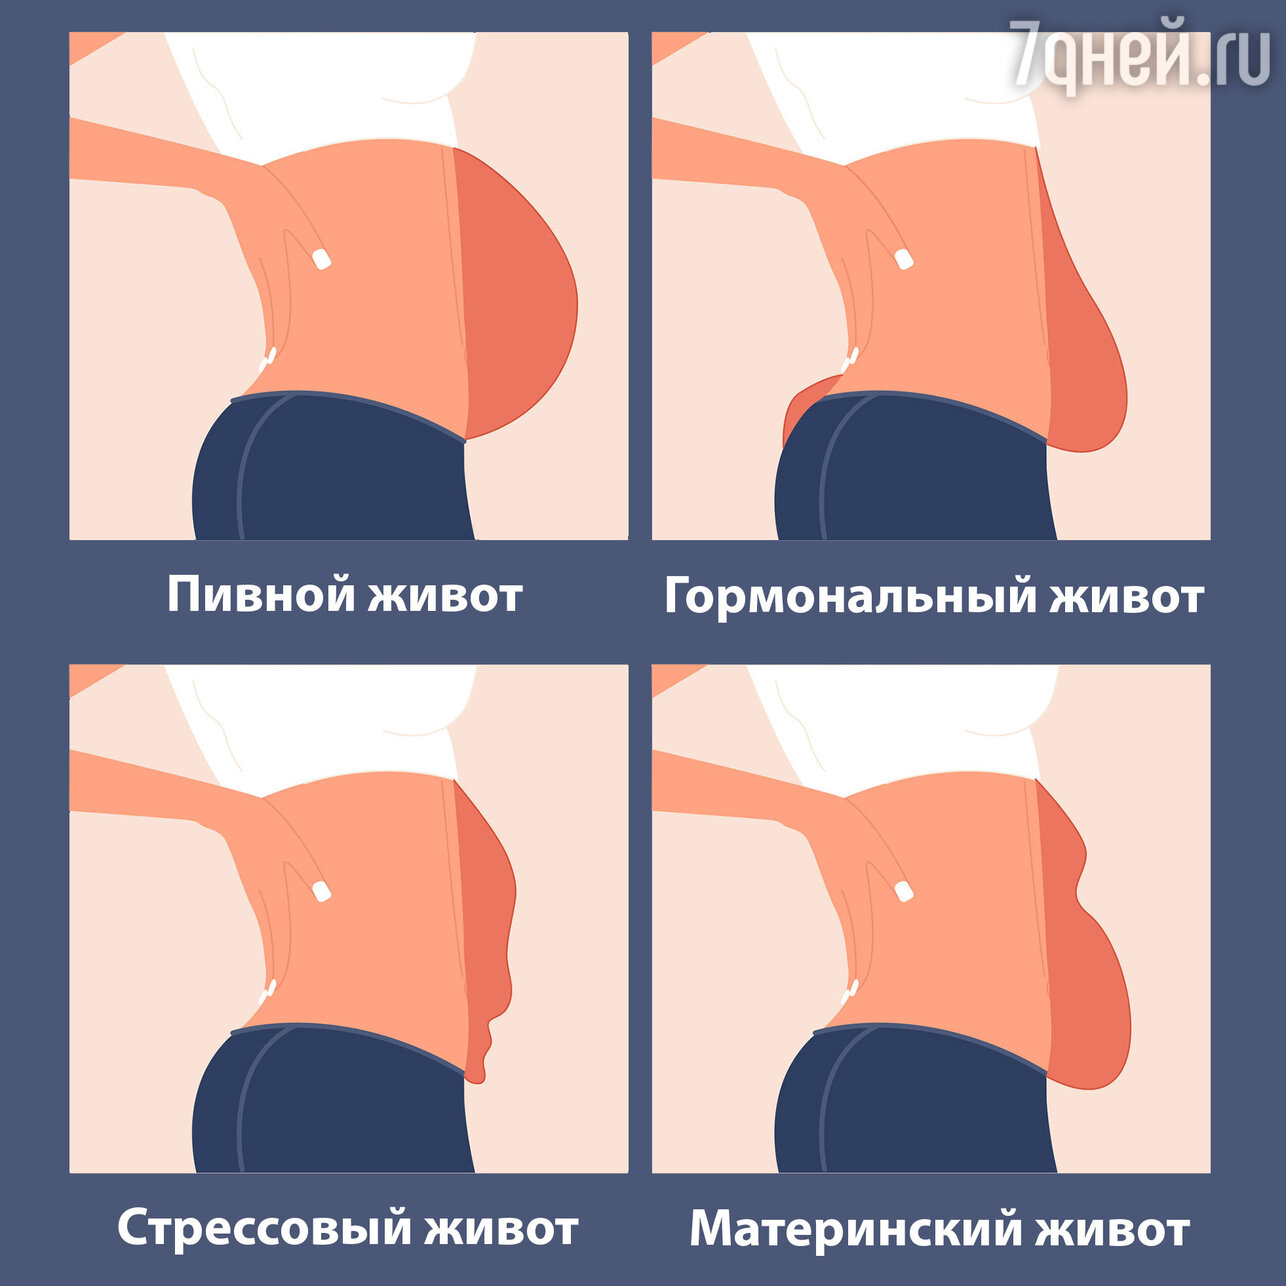 Кортизоловый живот - почему появляется и как избавиться? | balproton.ru